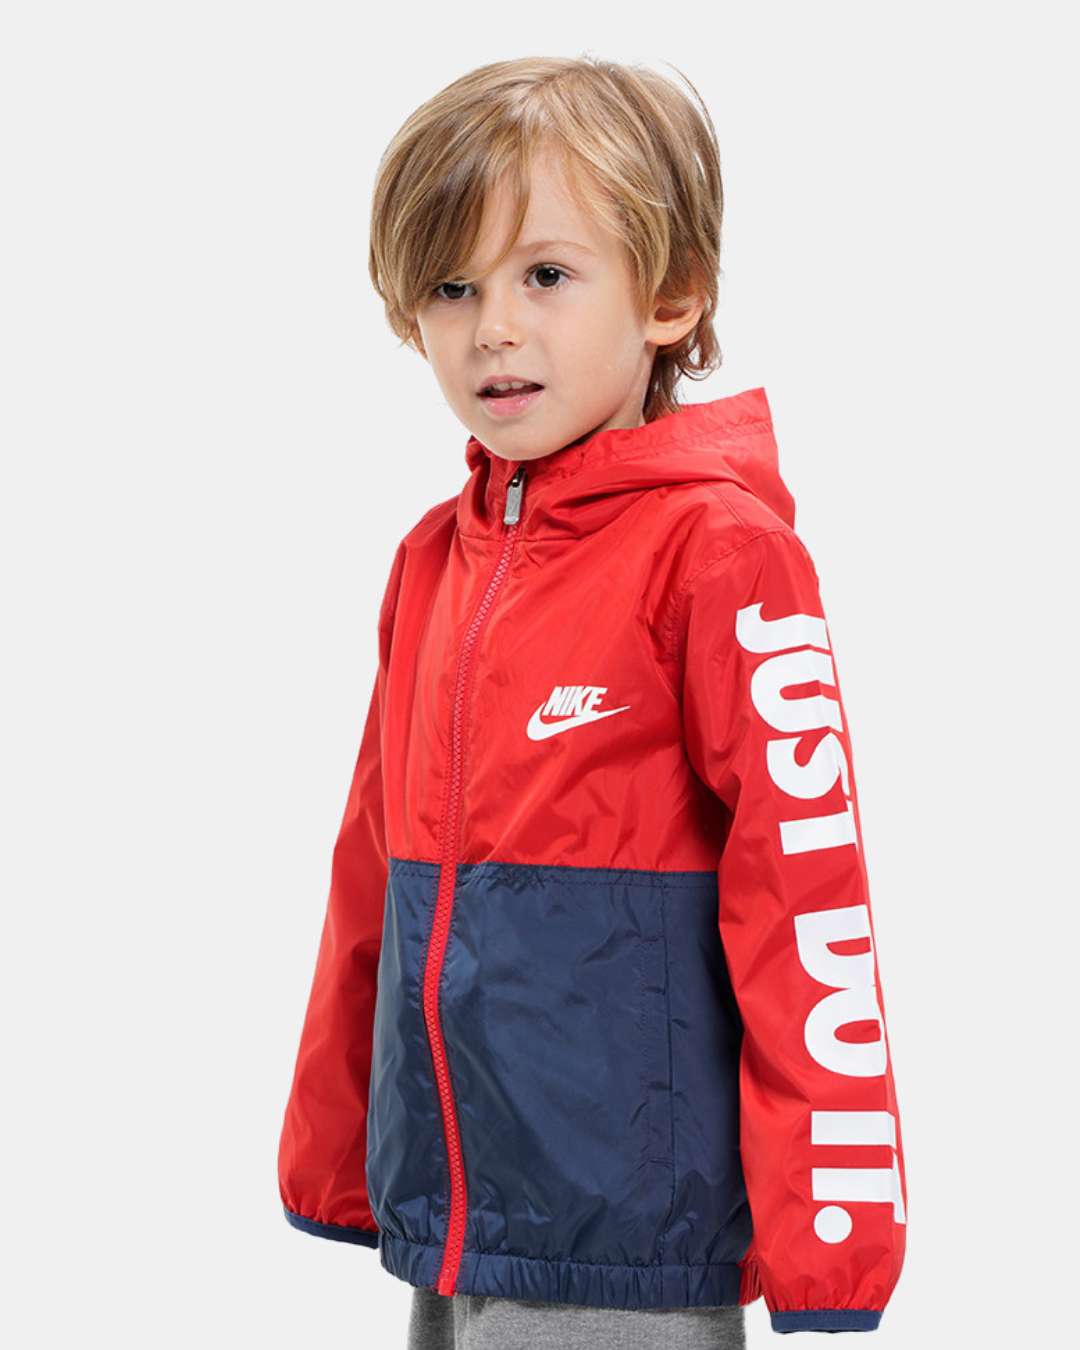 Nike Kinderjacke - Rot